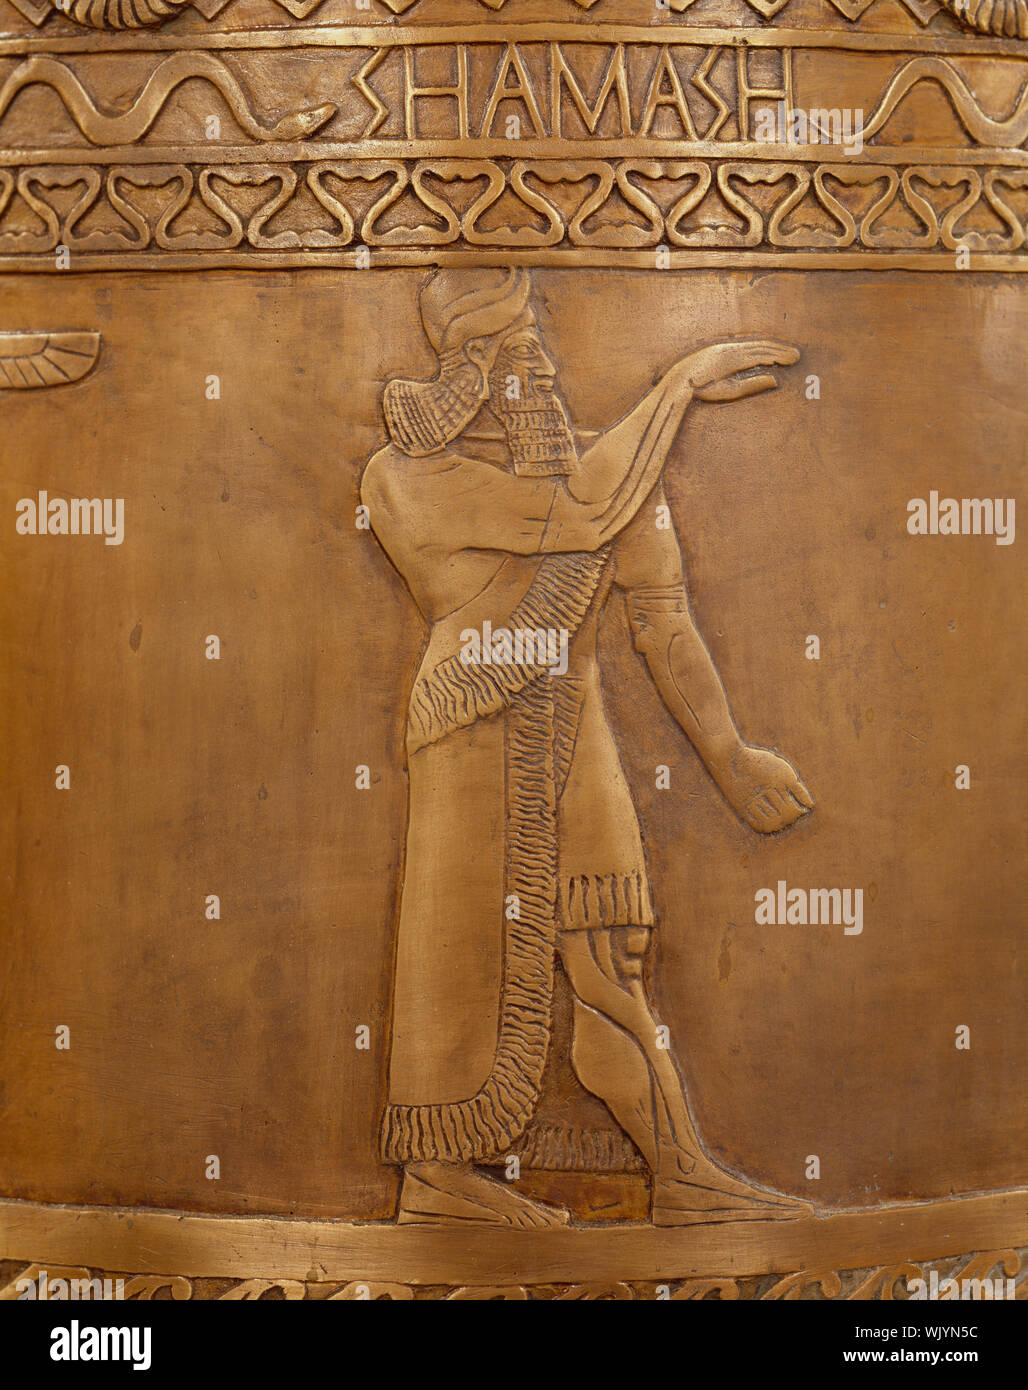 Immagine di Shamash, antiche divinità mesopotamiche, Accademia Nazionale delle Scienze, Washington, D.C. Foto Stock